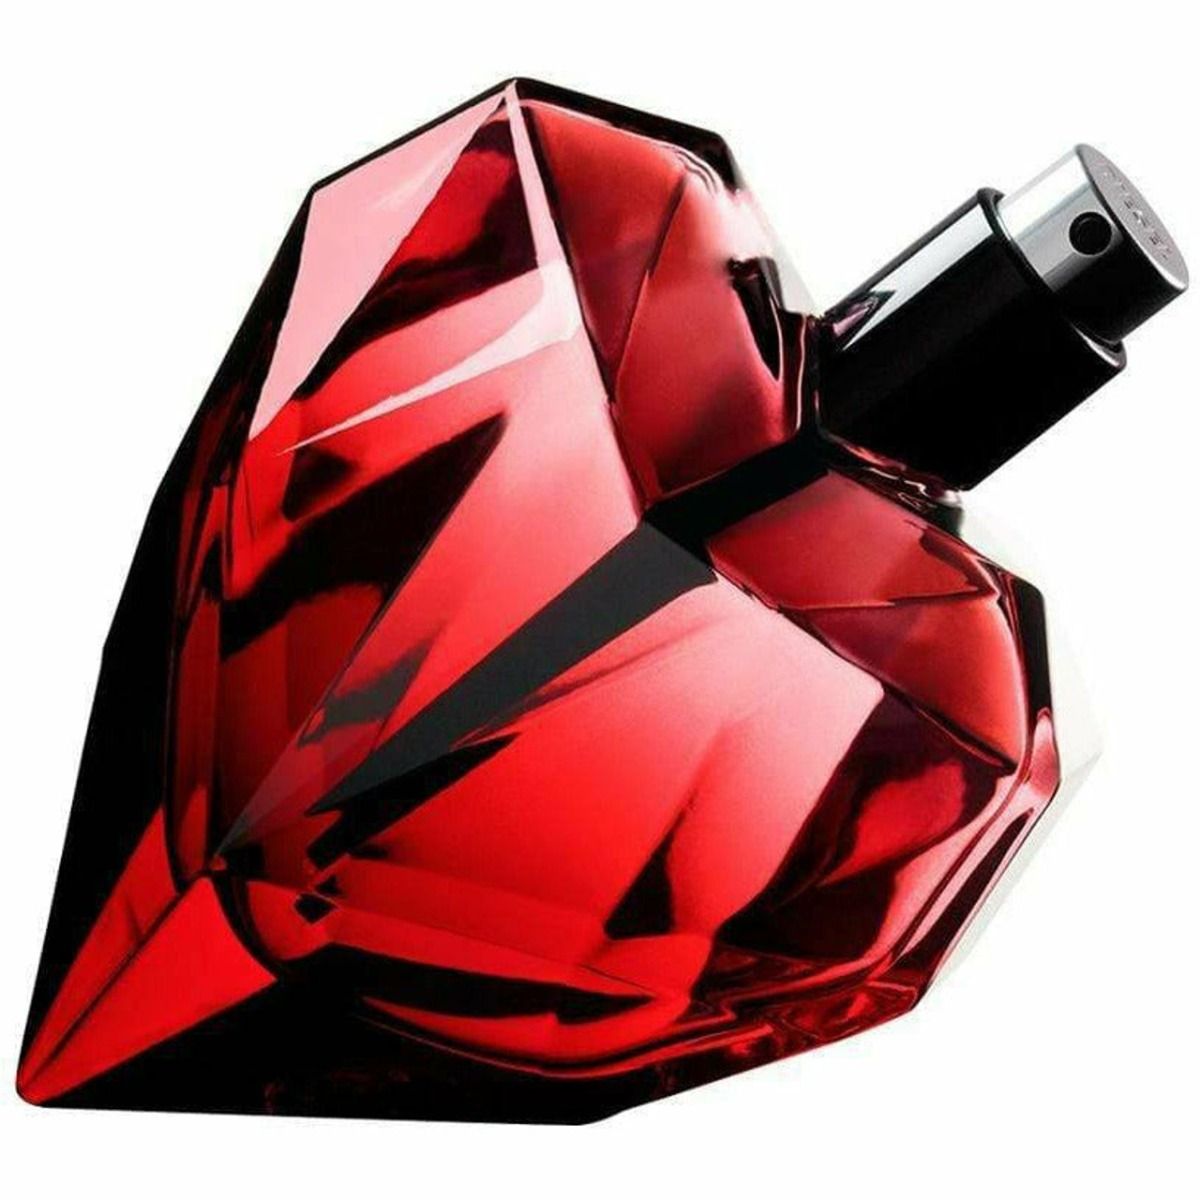 Diesel Loverdose Red Kiss парфюмерная вода для женщин, 50 ml loverdose парфюмерная вода 50мл